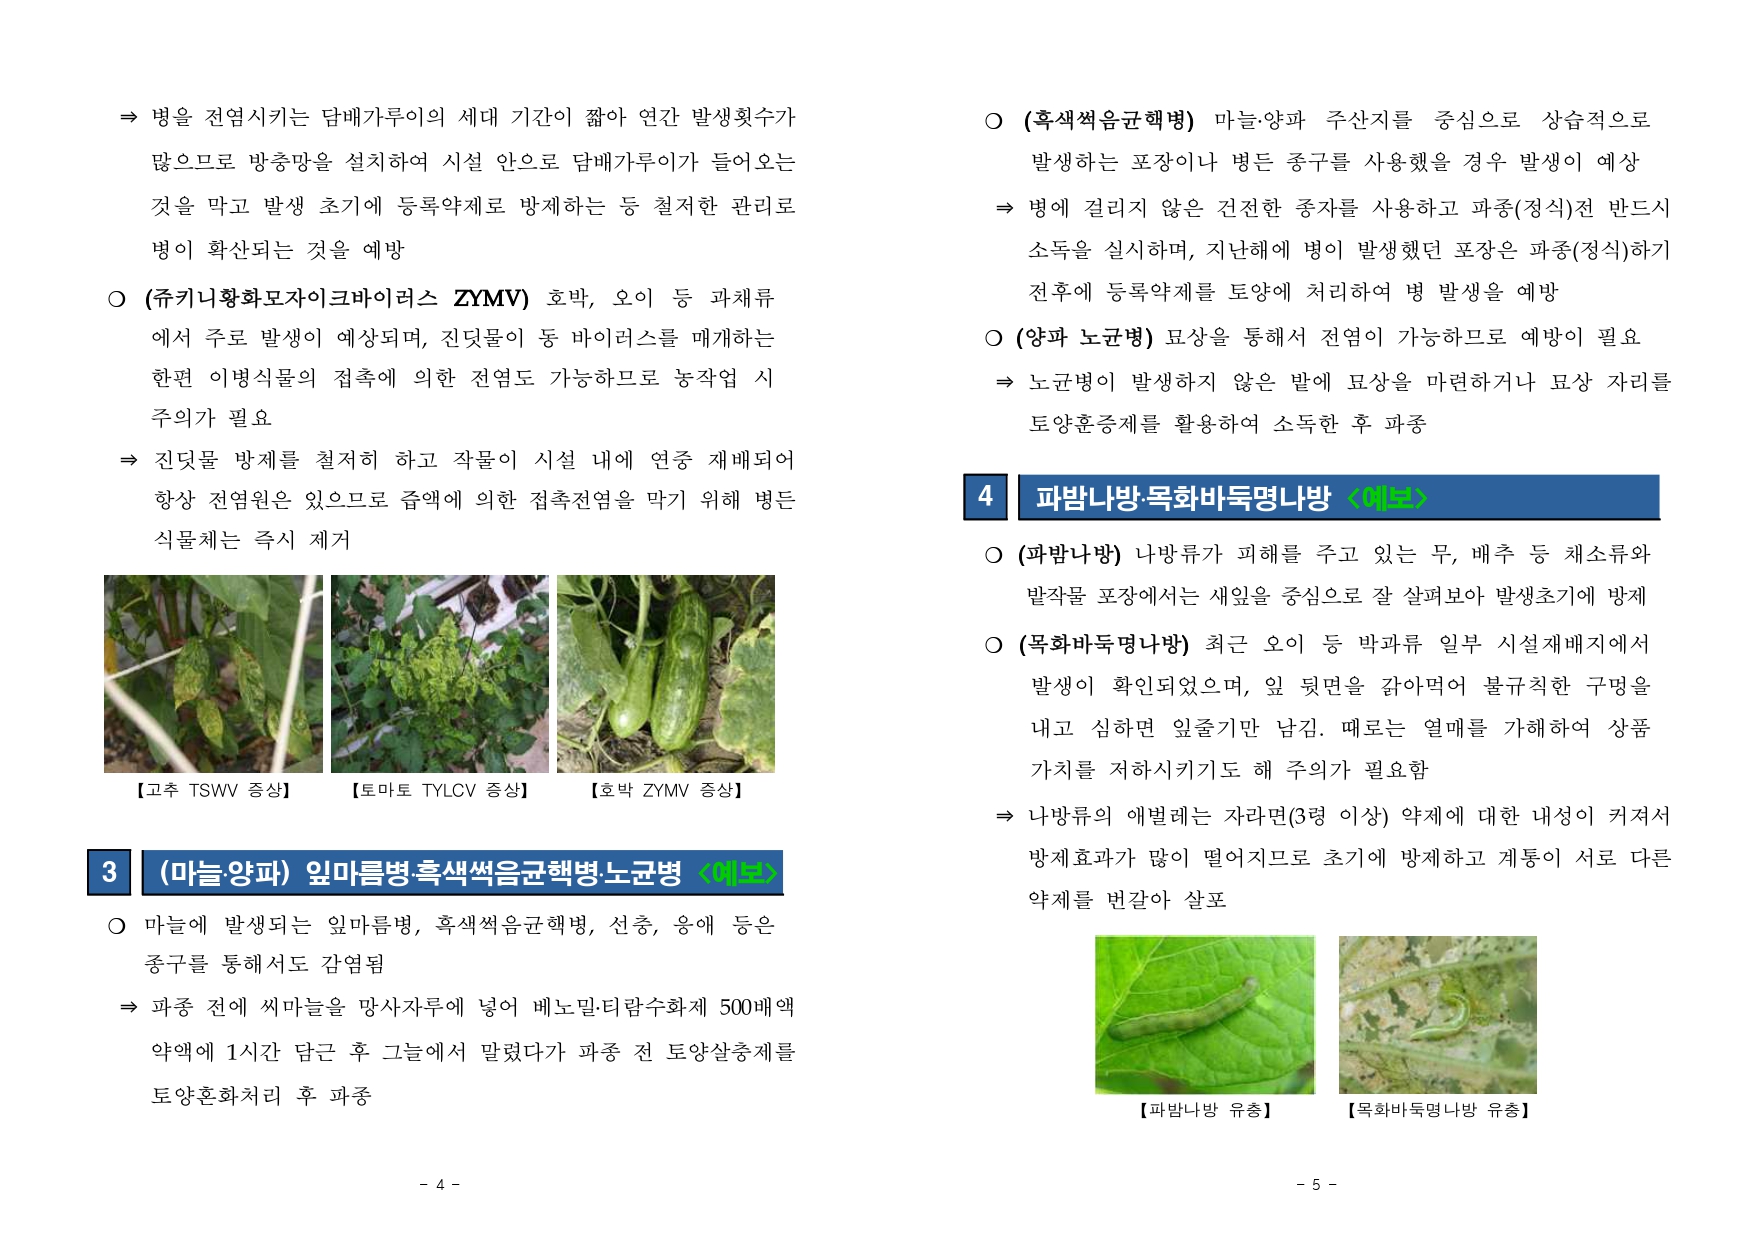 농작물 병해충 발생정보 제 13호(2020.10.1~10.31) 첨부#3